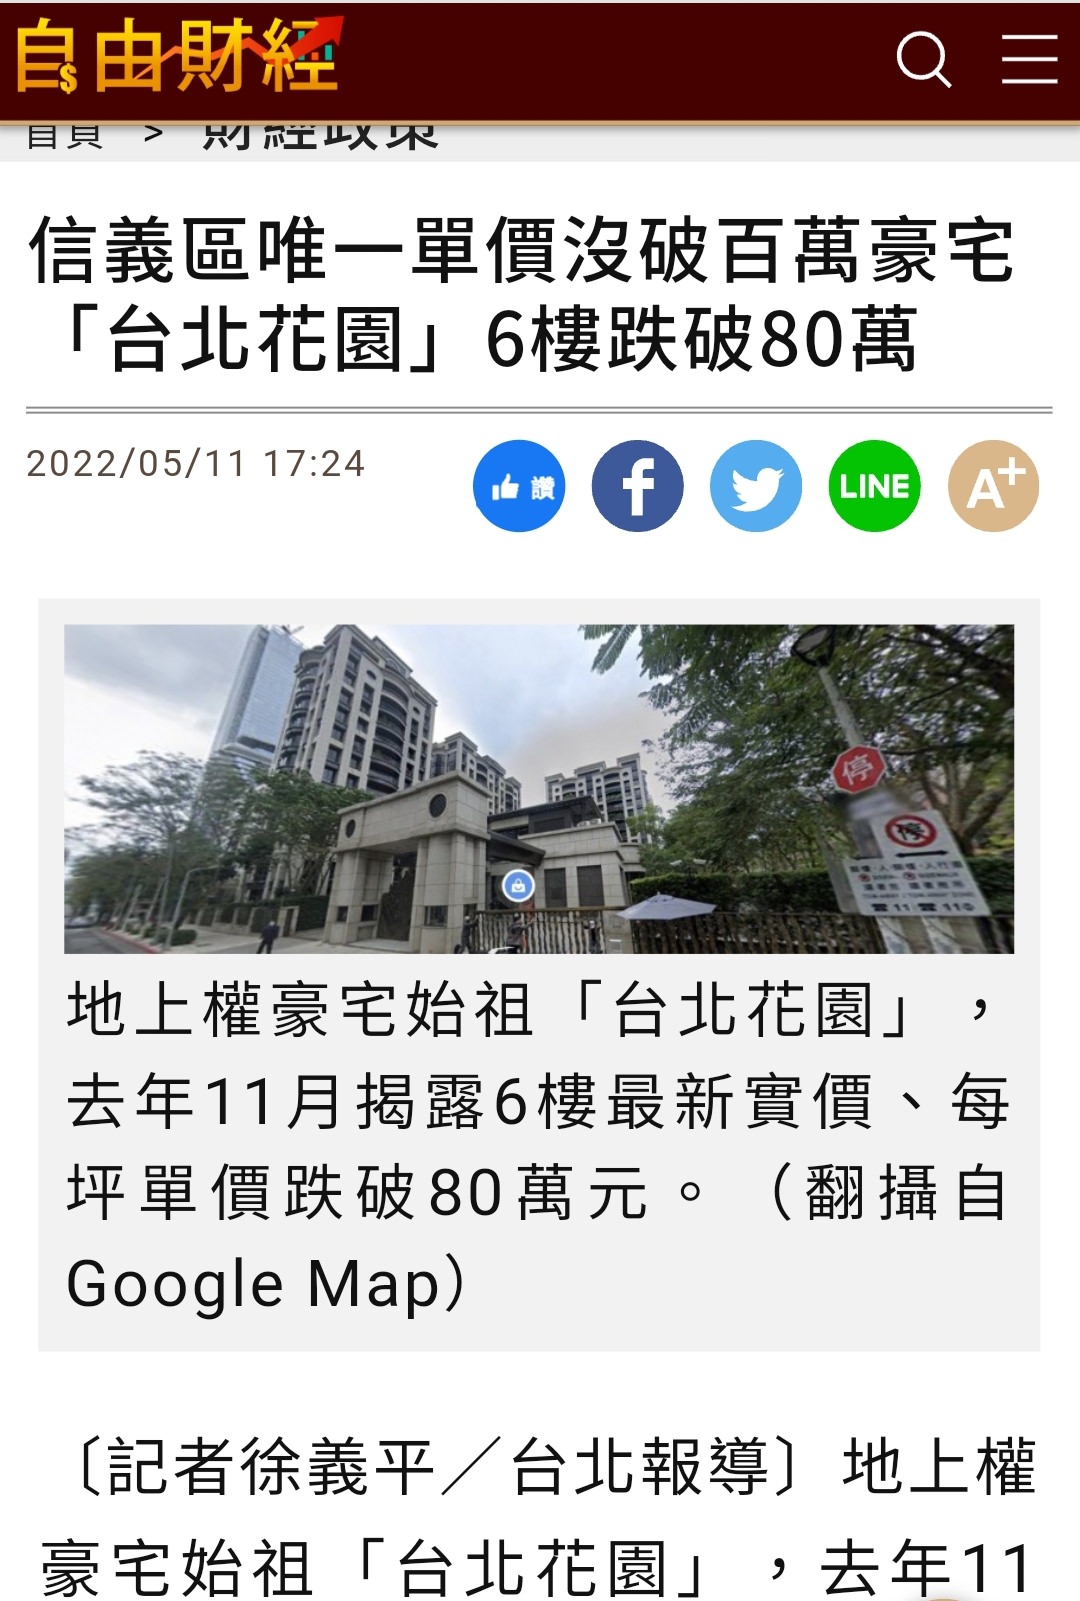 【不動產新聞】地上權：台北市信義區唯一單價沒破百萬豪宅 「台北花園」6樓跌破80萬